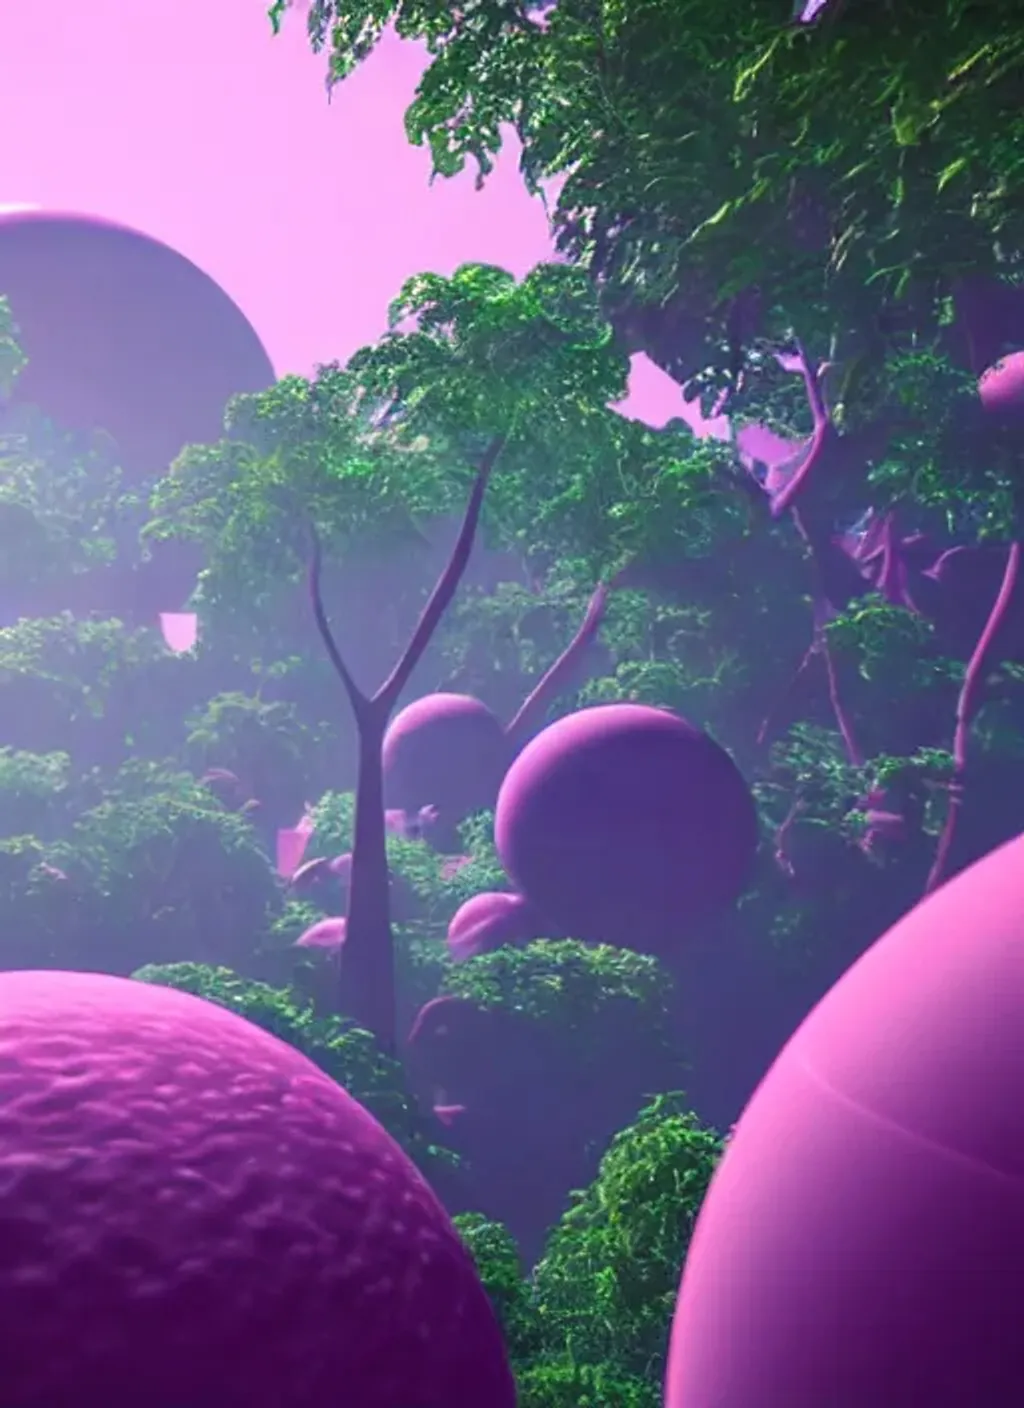 Prompt: A futuristic sci-fi bubble gum planet, 8k, lush jungle environment